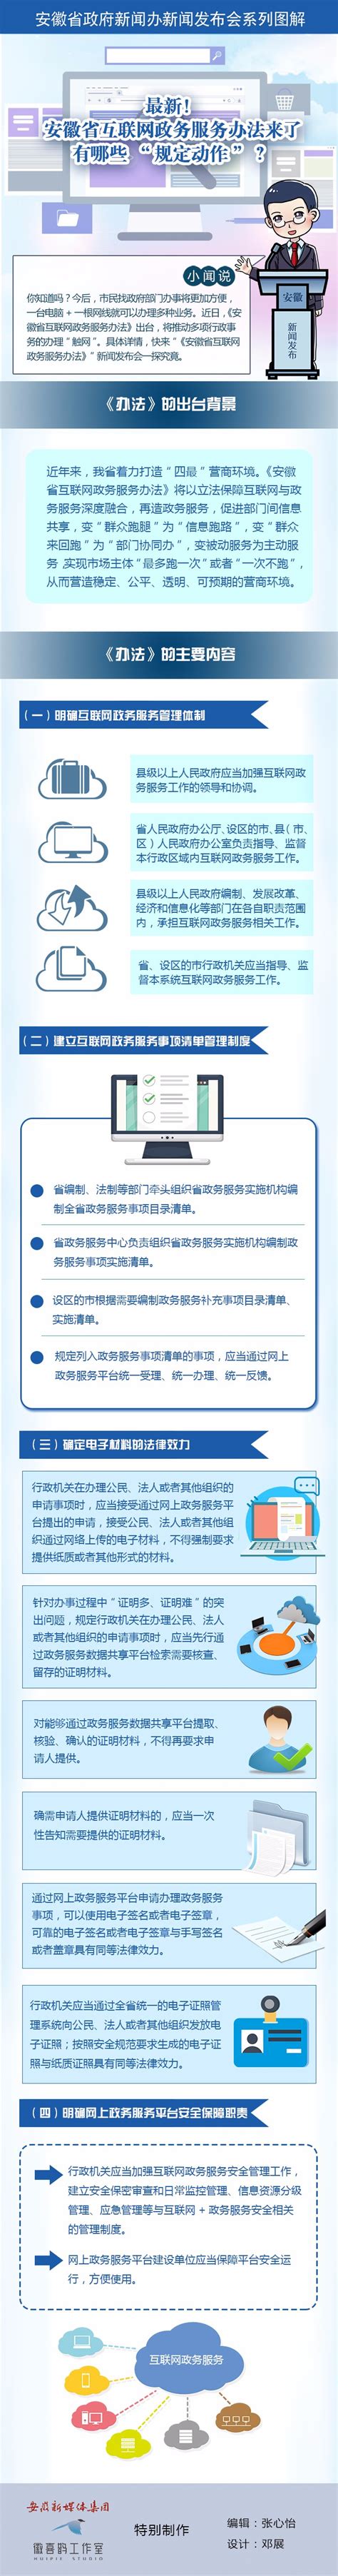 安徽省发布“5G+工业互联网”十大创新应用 - 张骅 - 安企在线-中国企业网